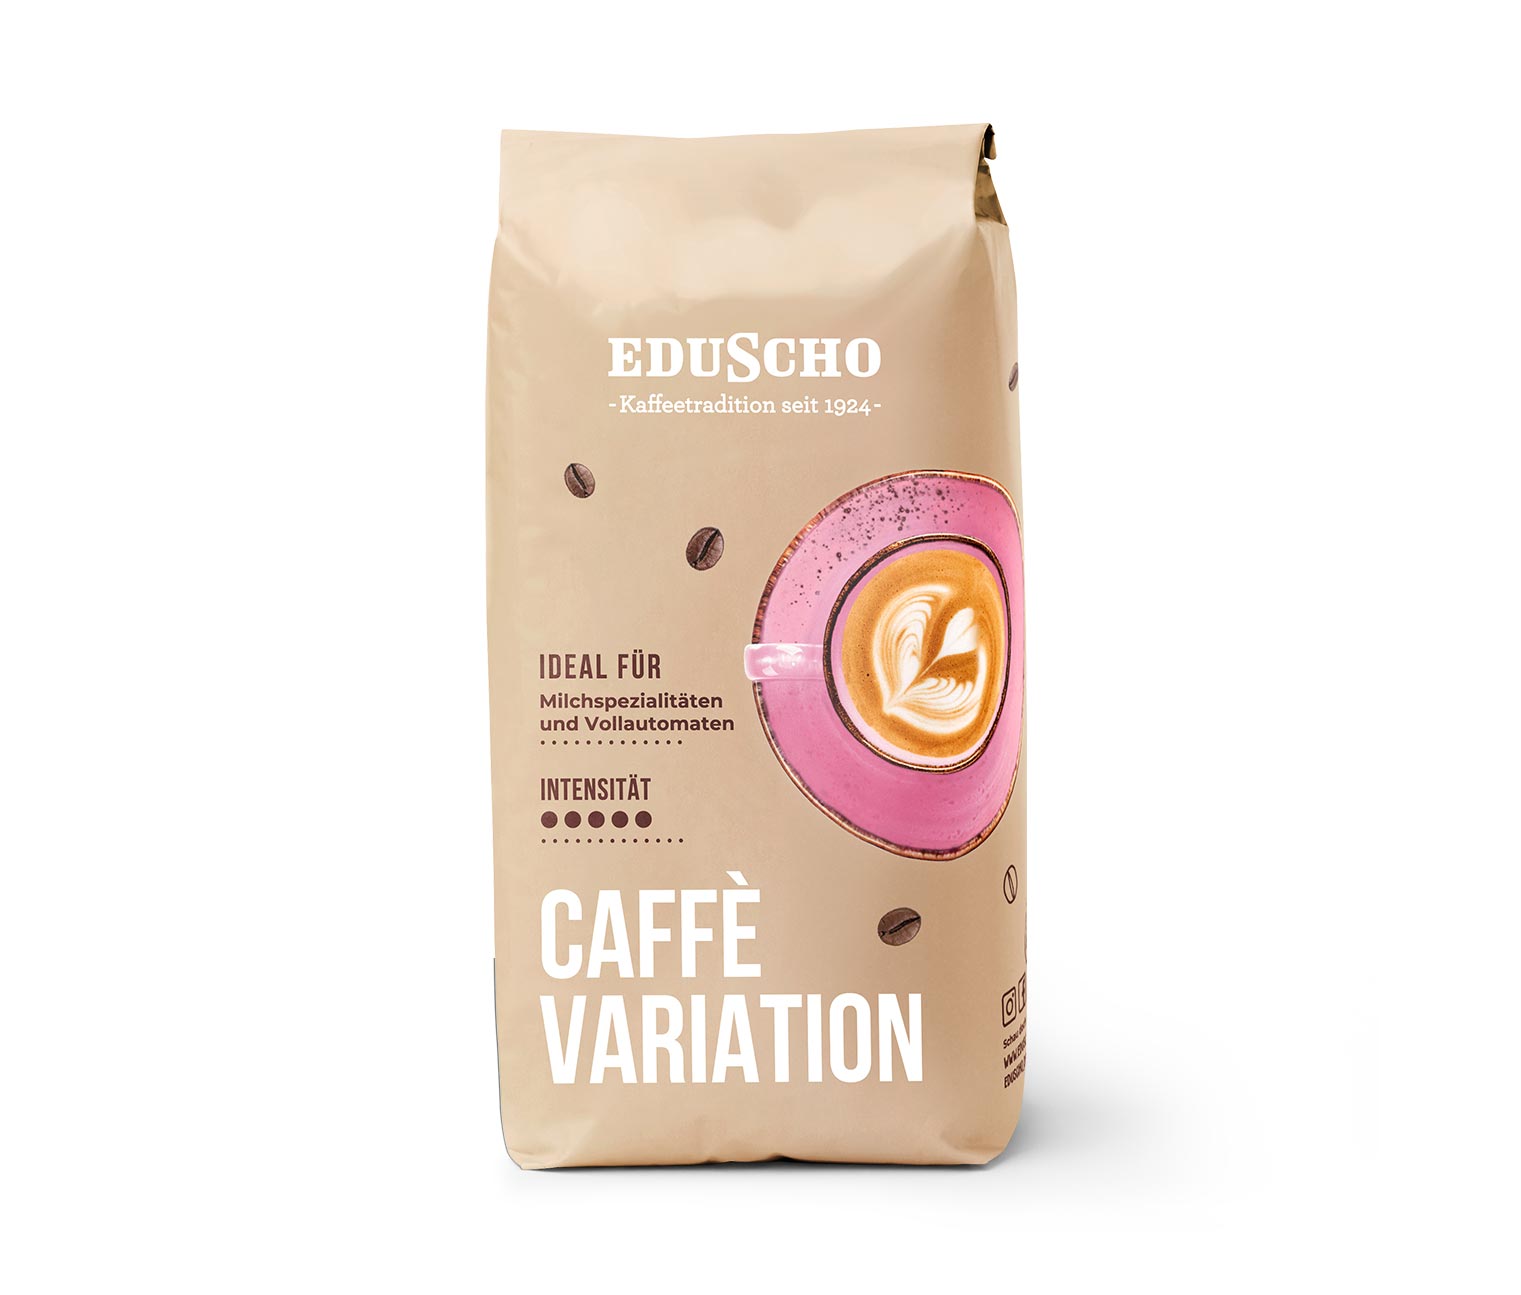 Eduscho Caffè Variation - 1 kg Ganze Bohne online bestellen bei Tchibo  522688